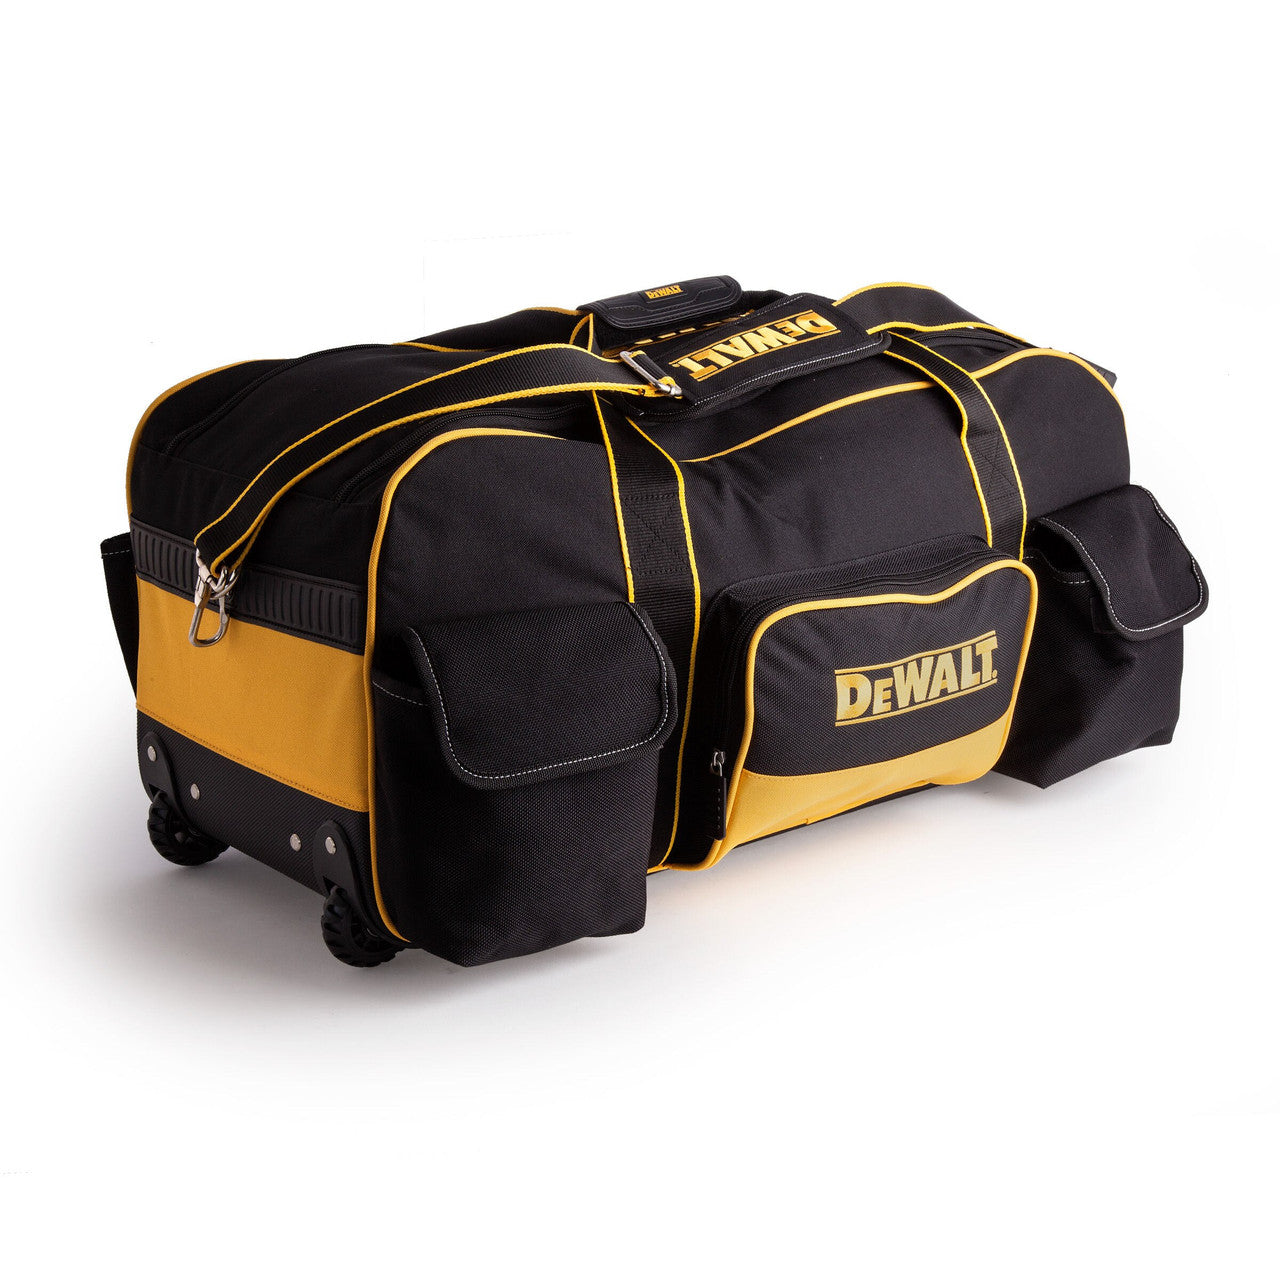 Dewalt DWST1-79210 Large Duffel Bag with Wheels